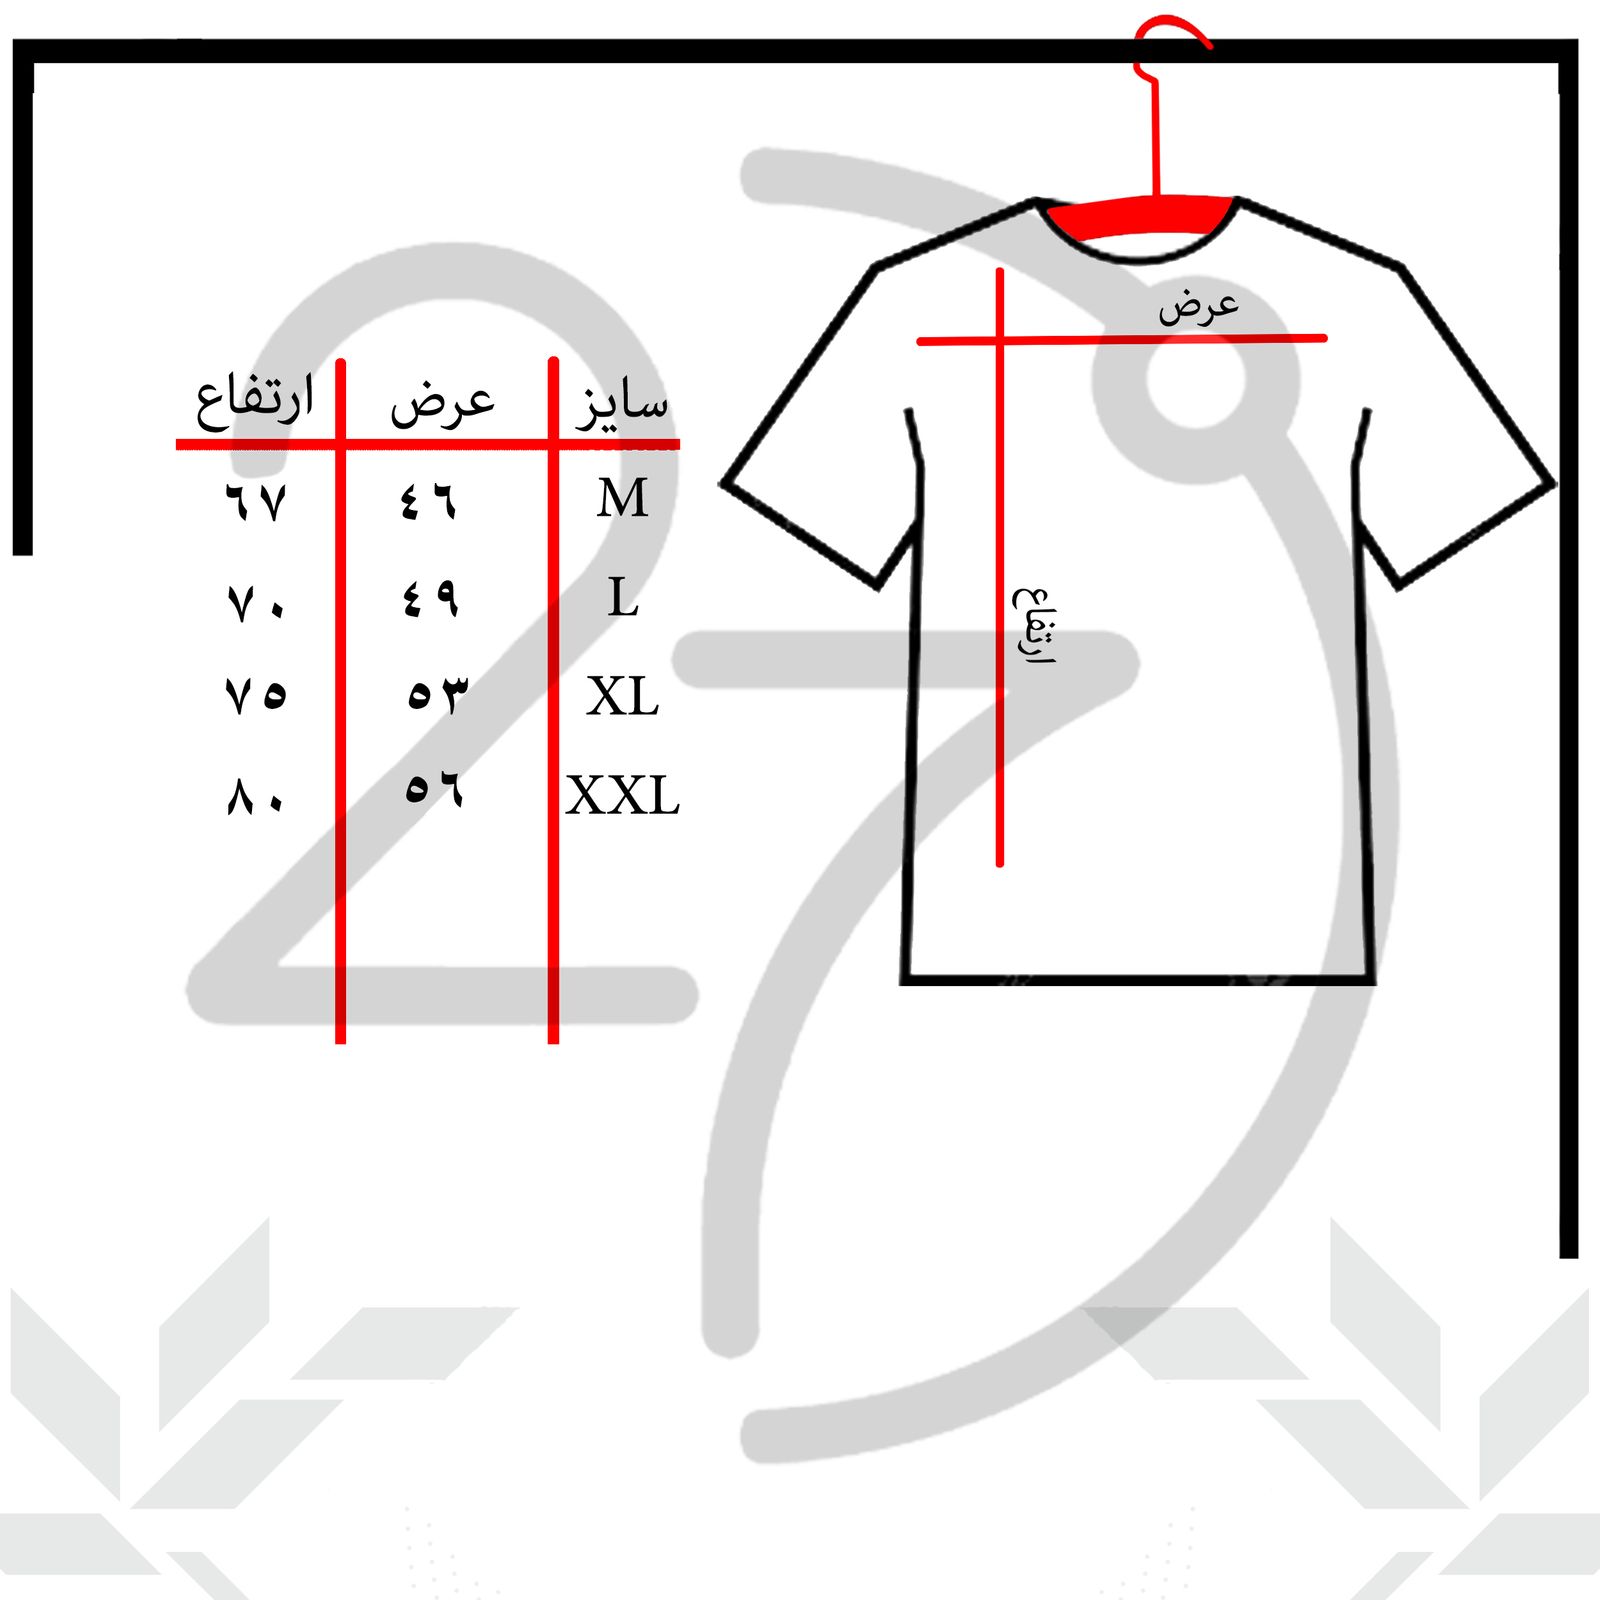 تی شرت آستین کوتاه مردانه 27 مدل Halo کد KV04 رنگ سفید -  - 3